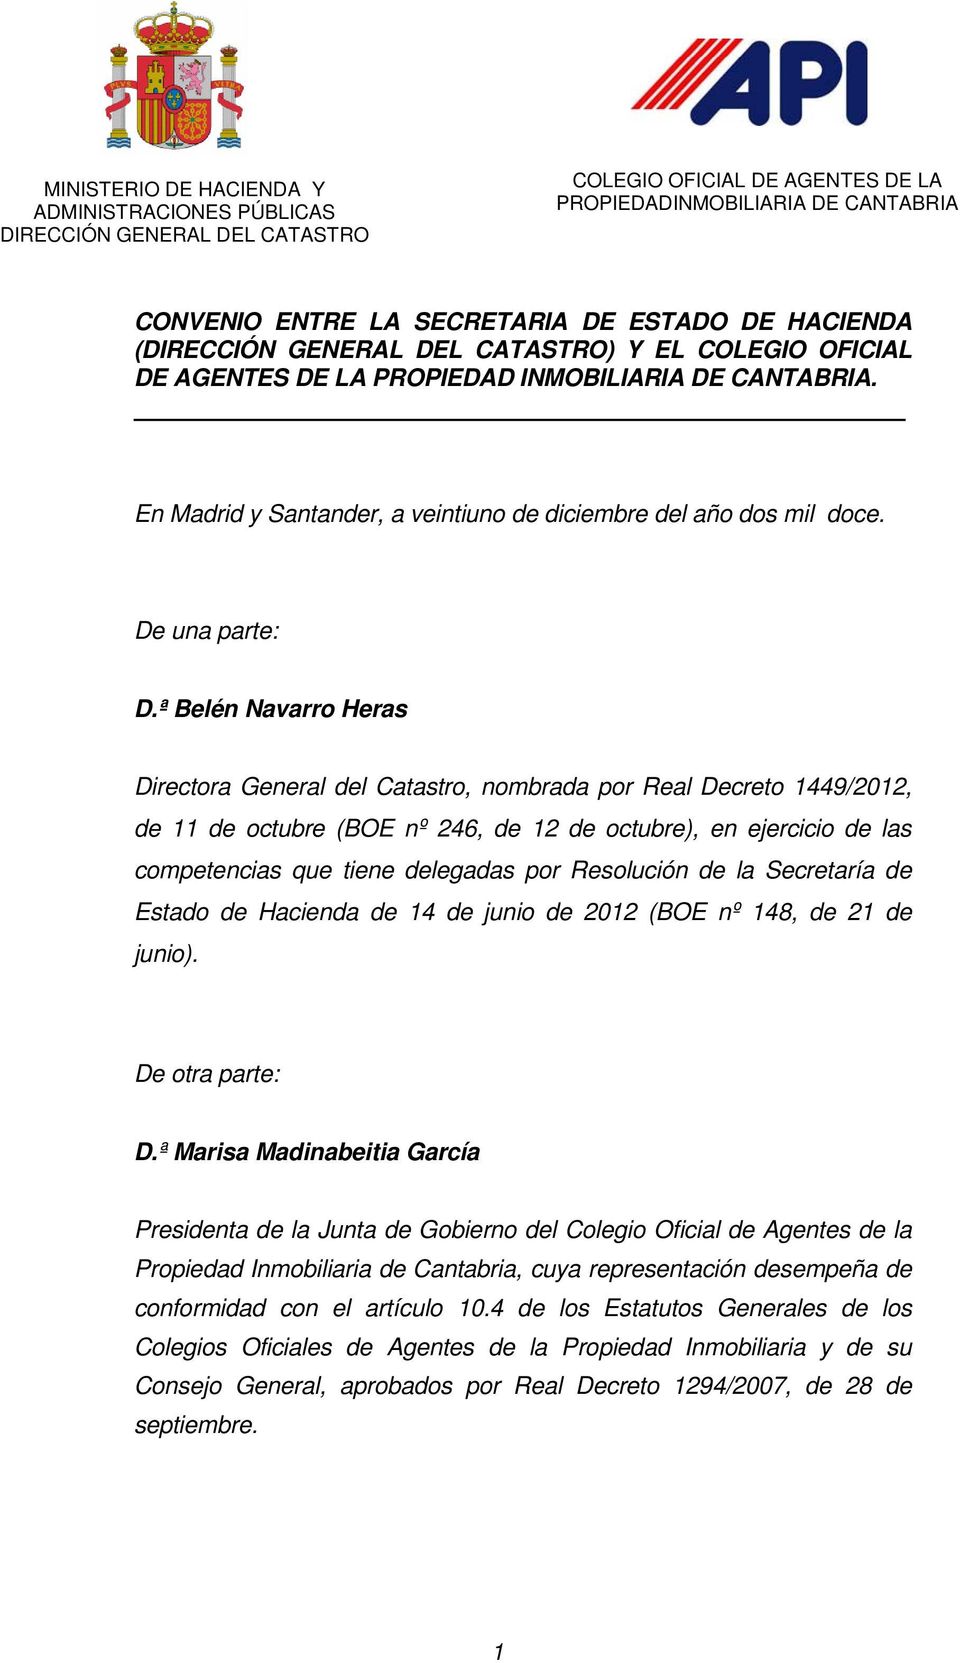 ª Belén Navarro Heras Directora General del Catastro, nombrada por Real Decreto 1449/2012, de 11 de octubre (BOE nº 246, de 12 de octubre), en ejercicio de las competencias que tiene delegadas por